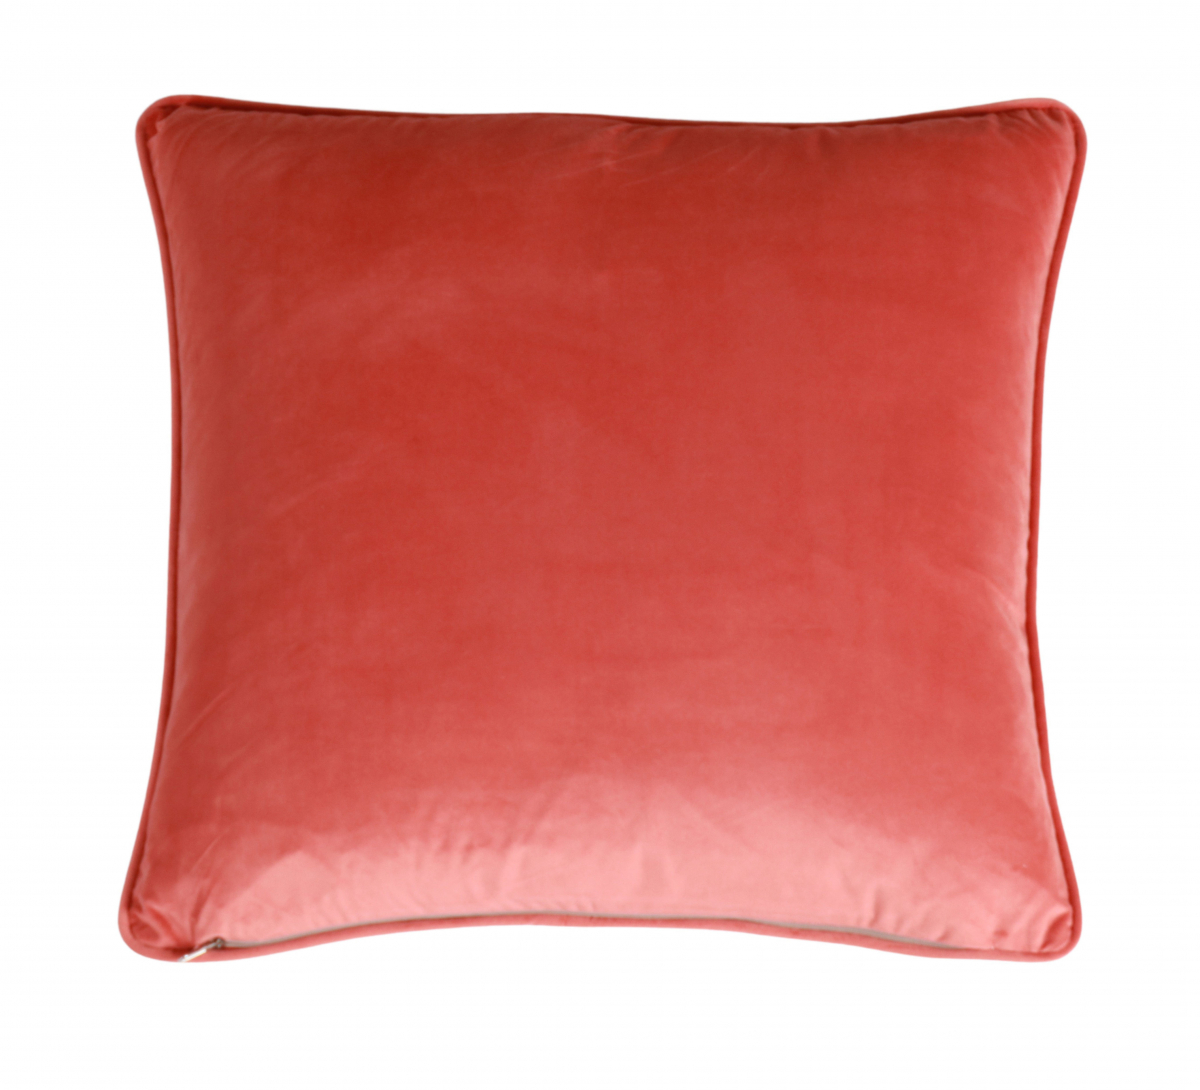 Orange coral cushion with orange velvet backing